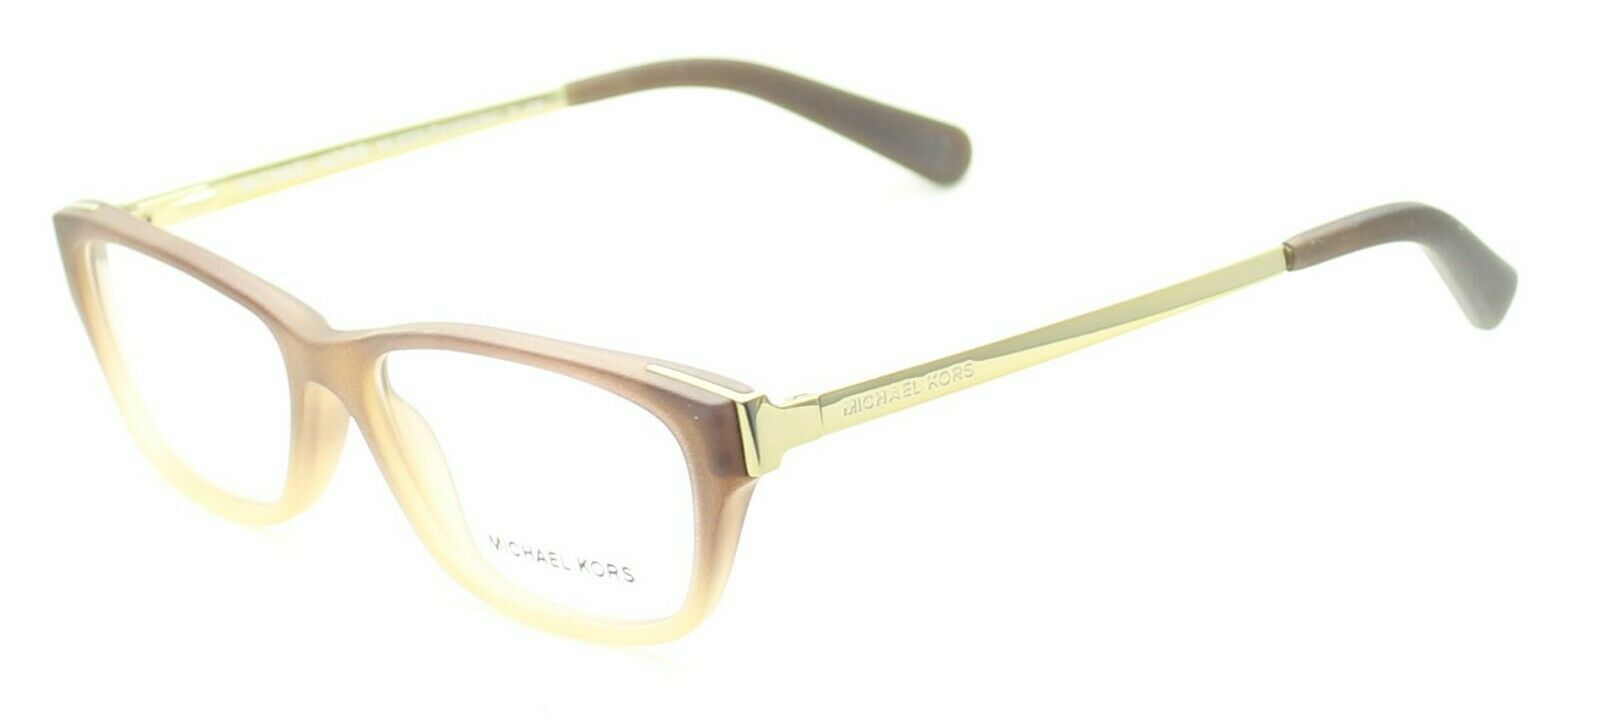 MICHAEL KORS MK 8009 3044 Paramaribo Eyewear FRAMES RX Optical EyeglassesGlasses